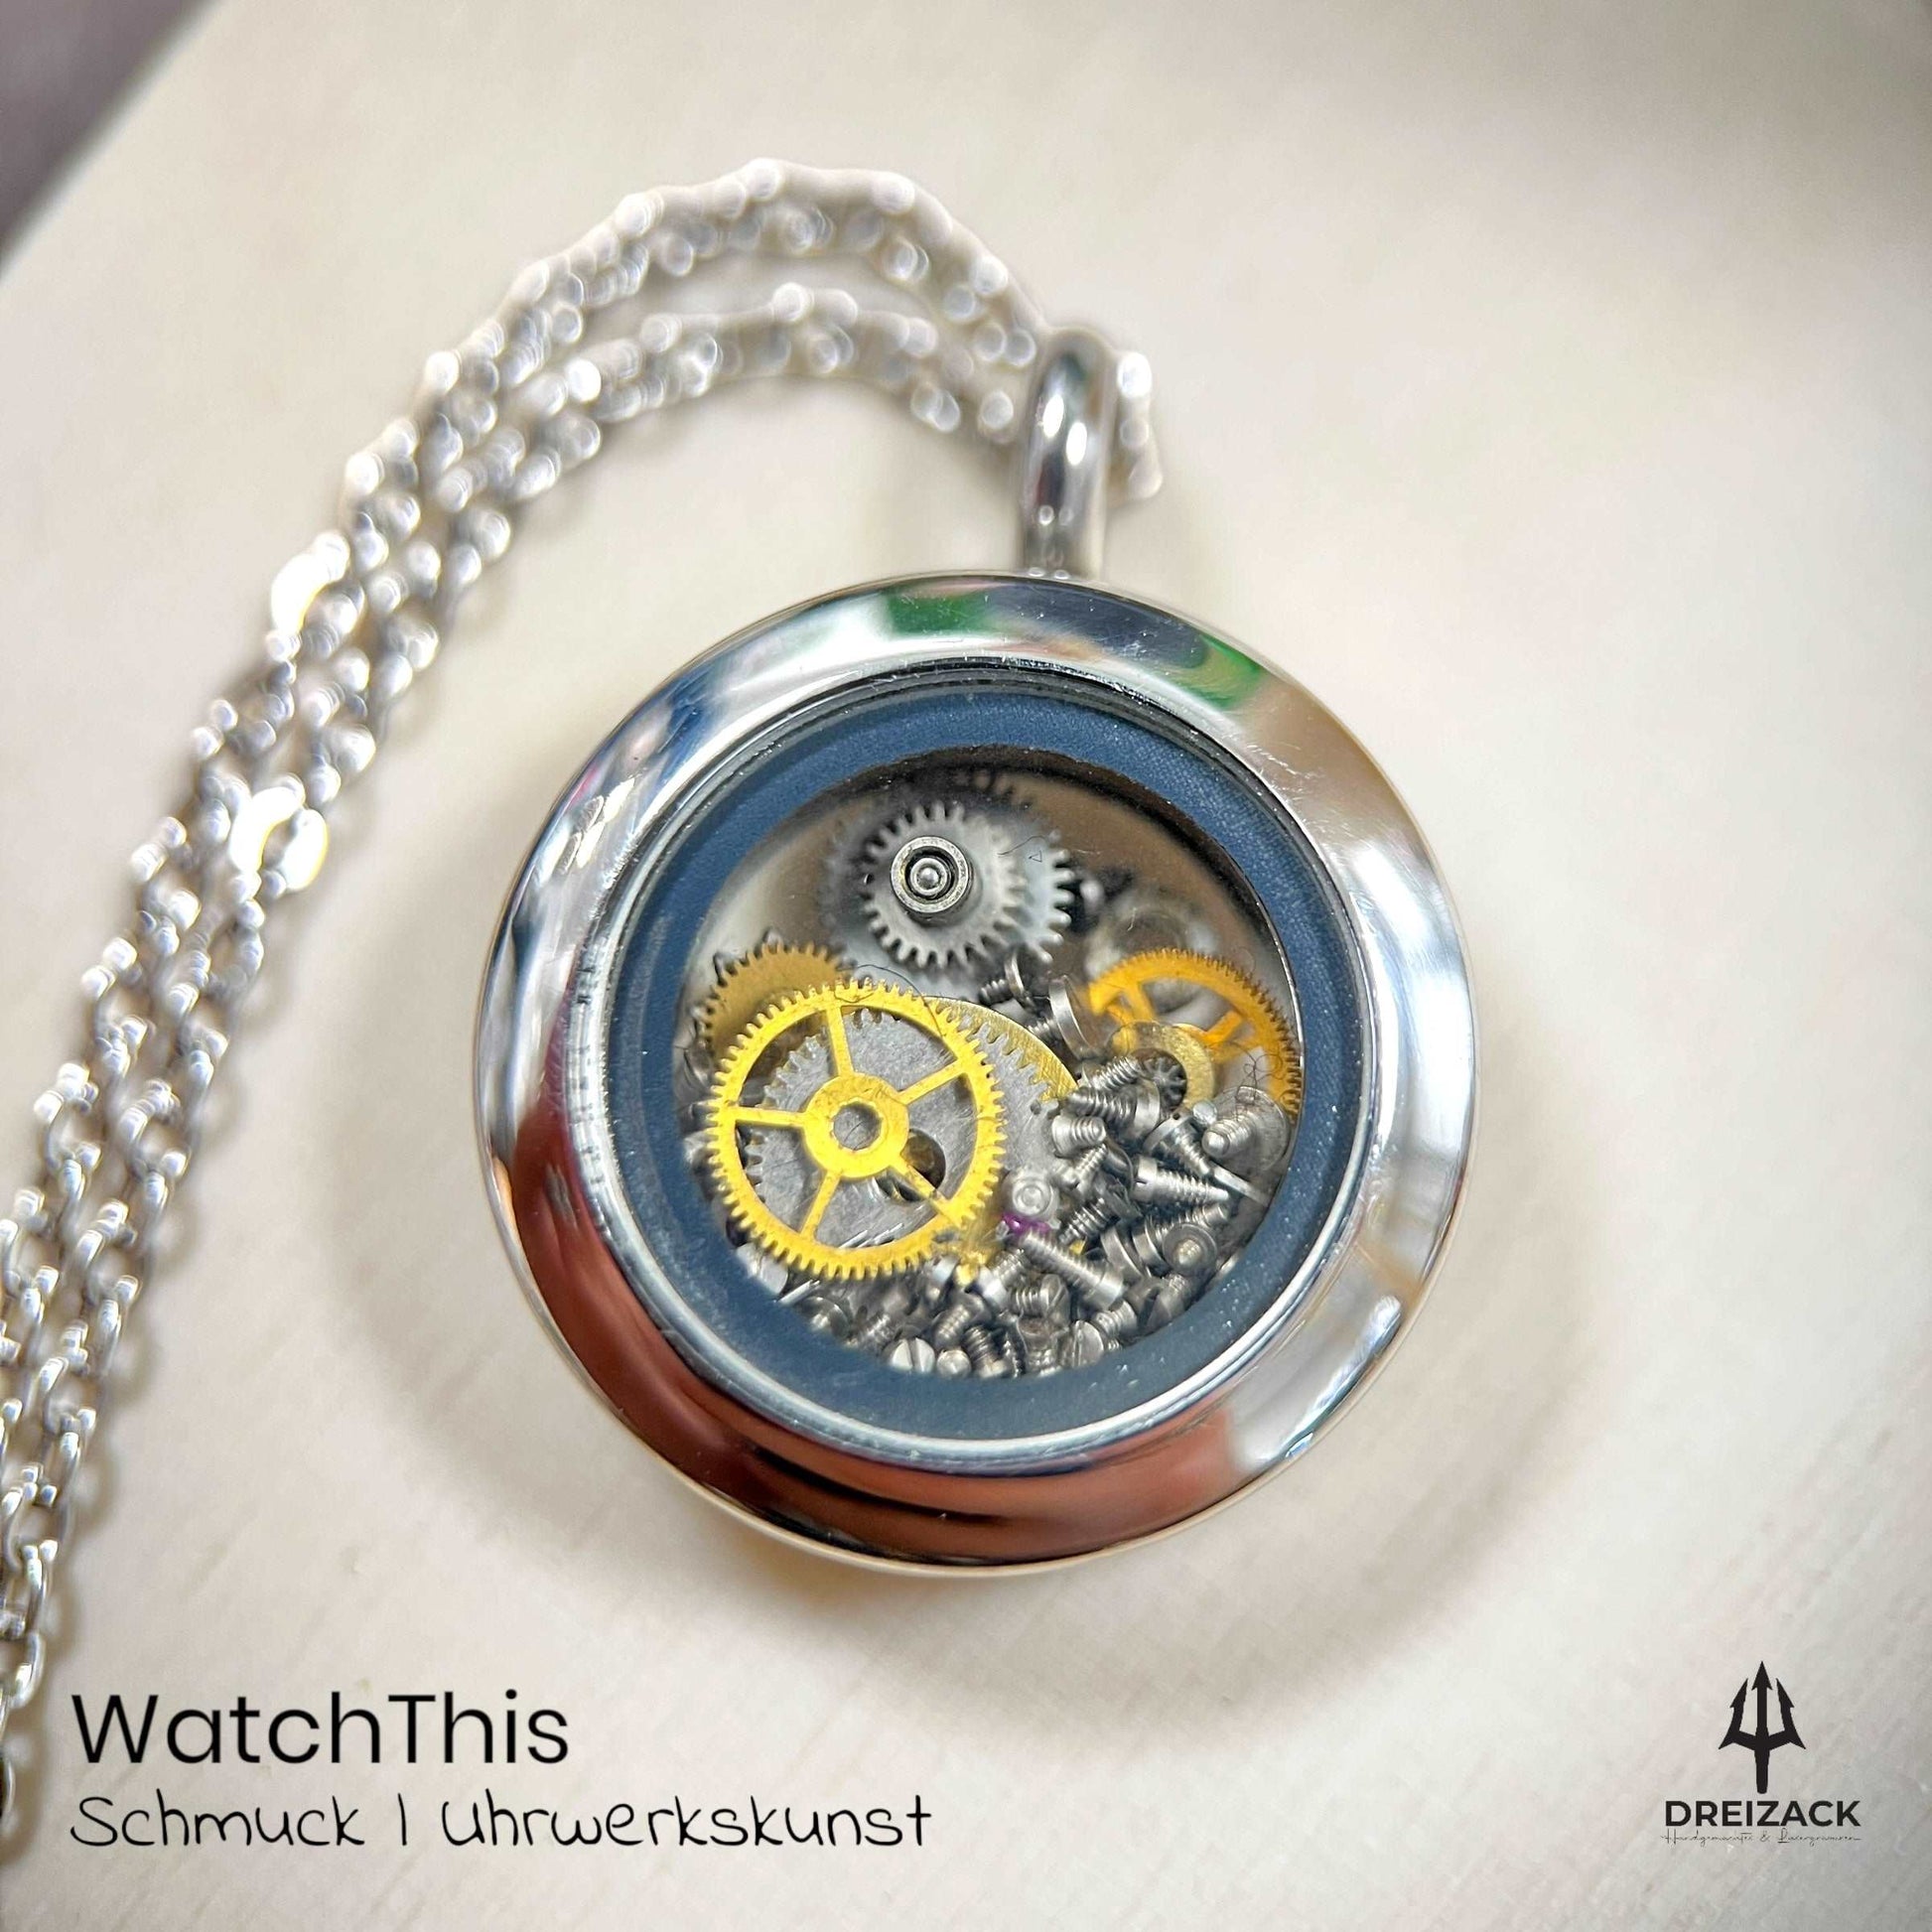 Medaillons von WatchThis - Zeitlose Eleganz aus Uhrwerken Silber | Rasmus Schmuck WatchThis oesterreich handgemachte geschenke in wien